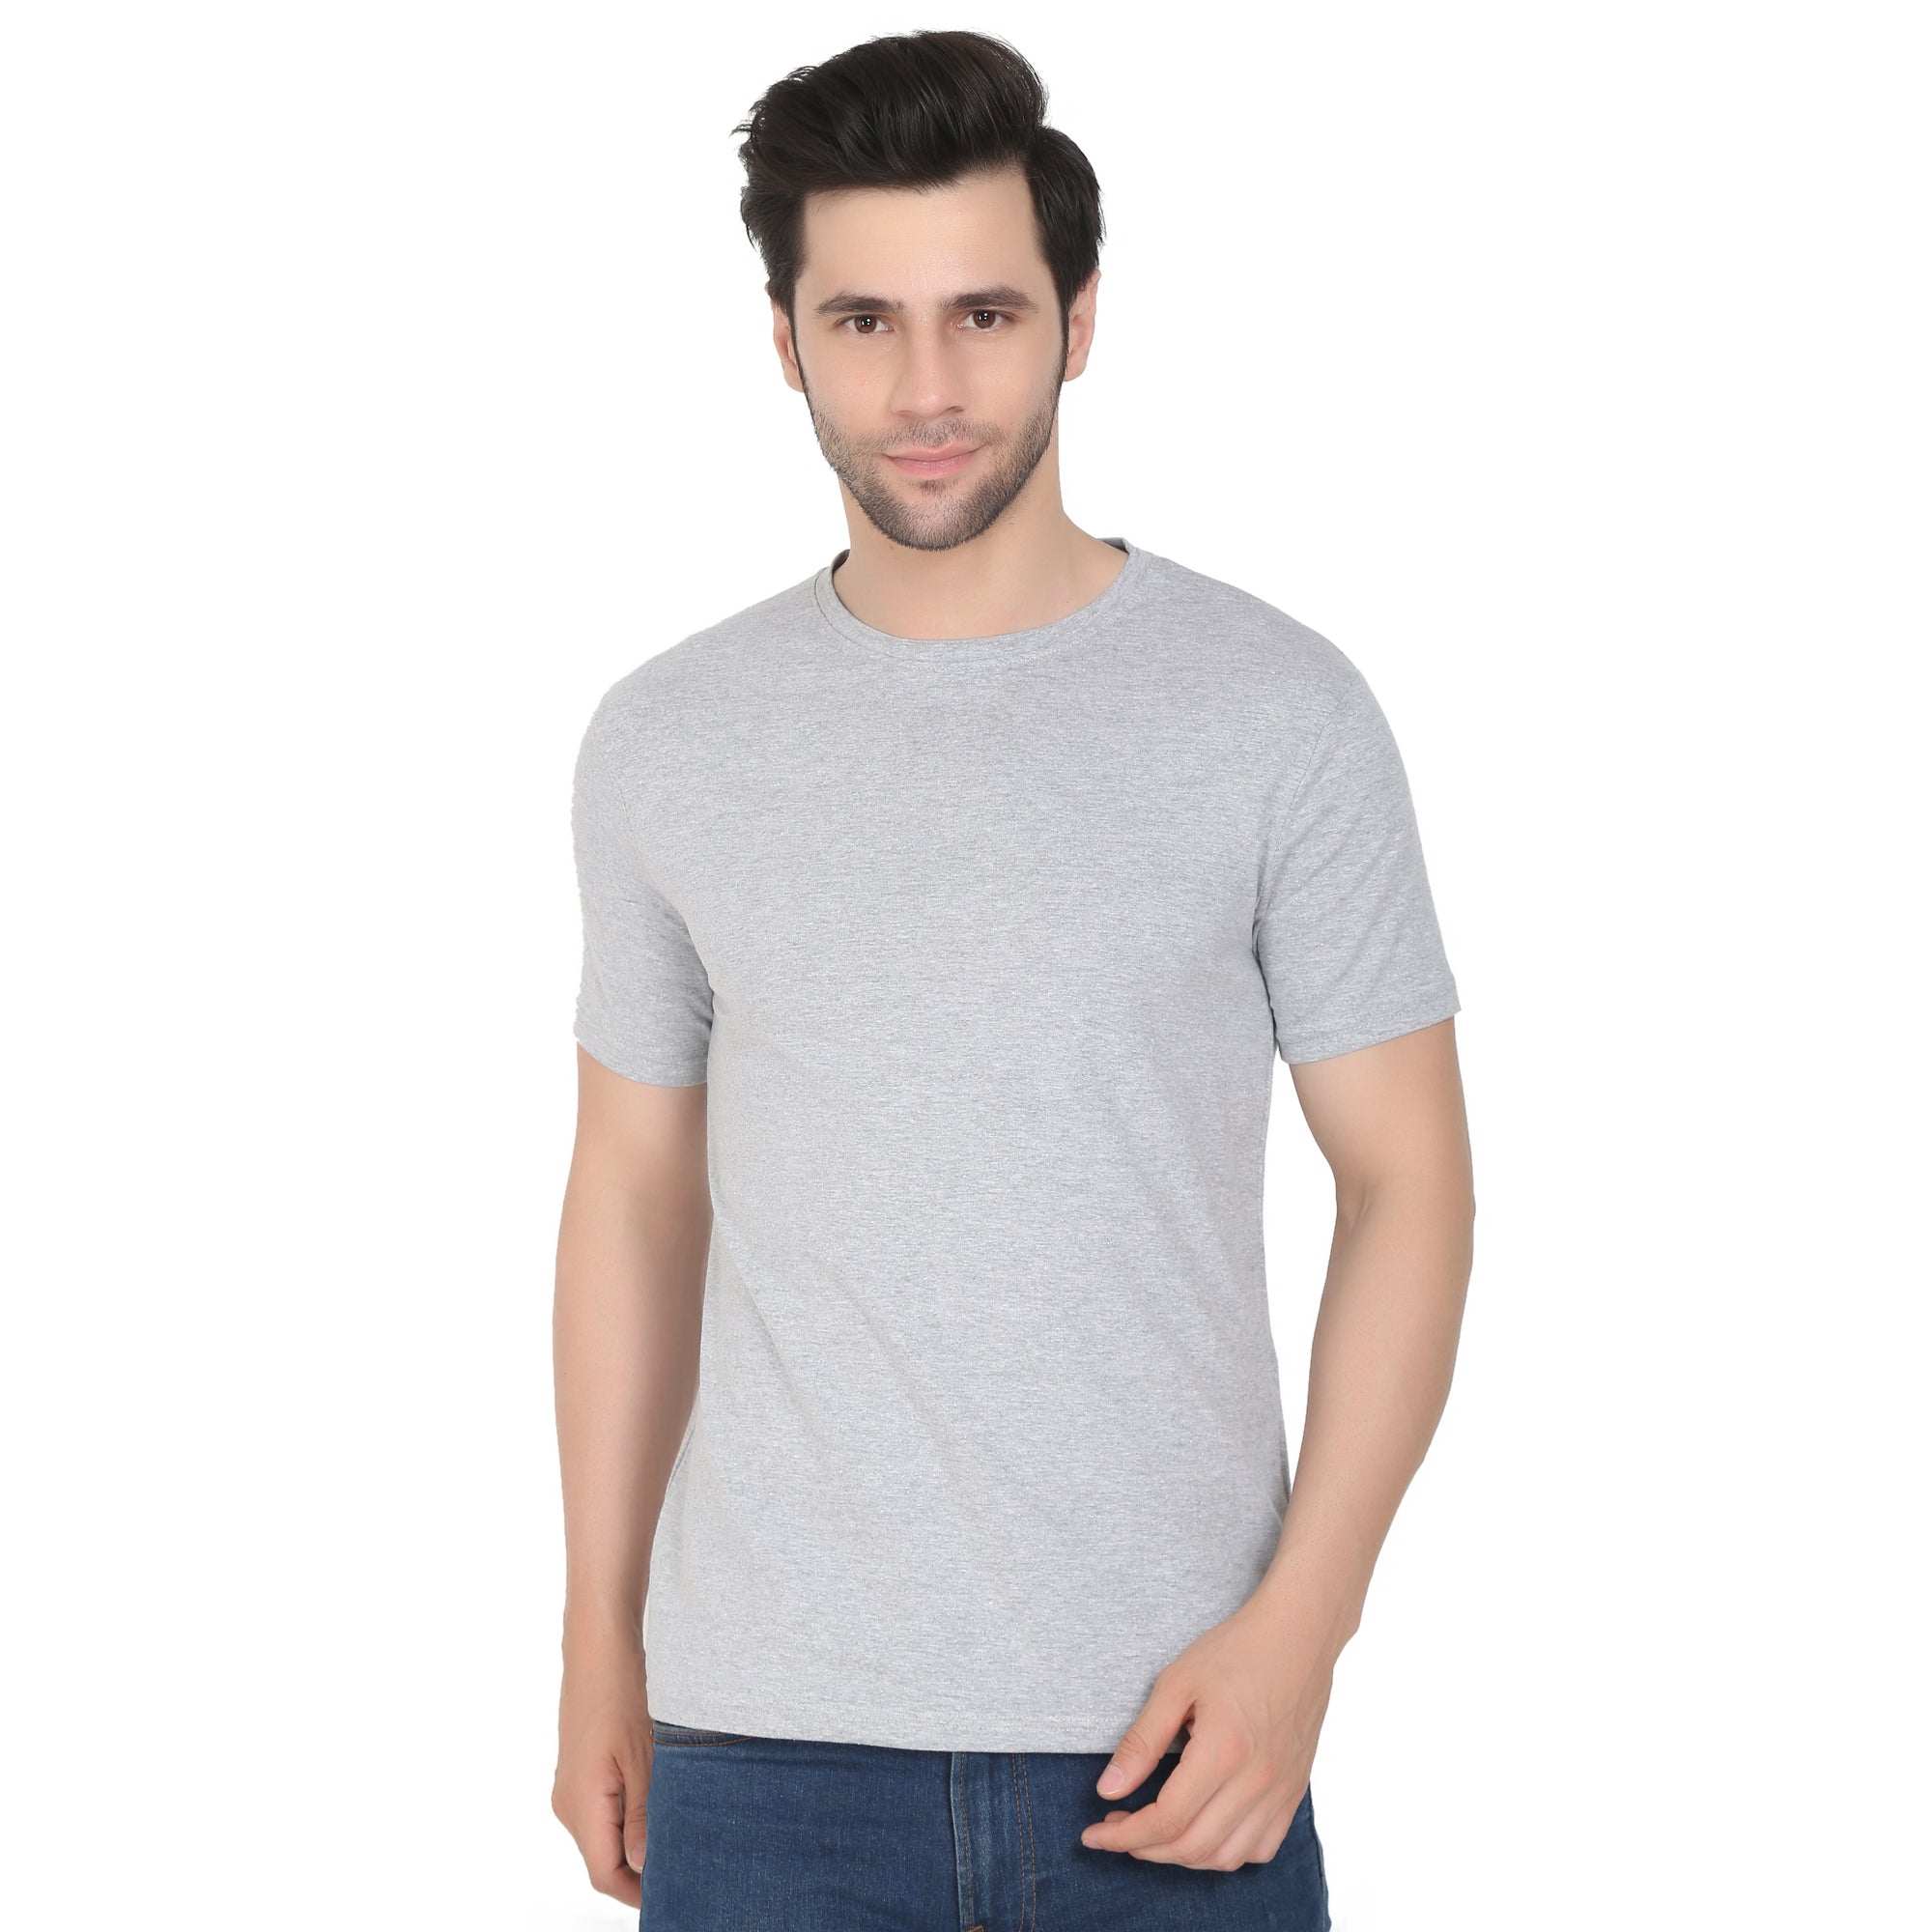 Men Four Way Stretch Cotton Plain T-shirt - Grey Colour